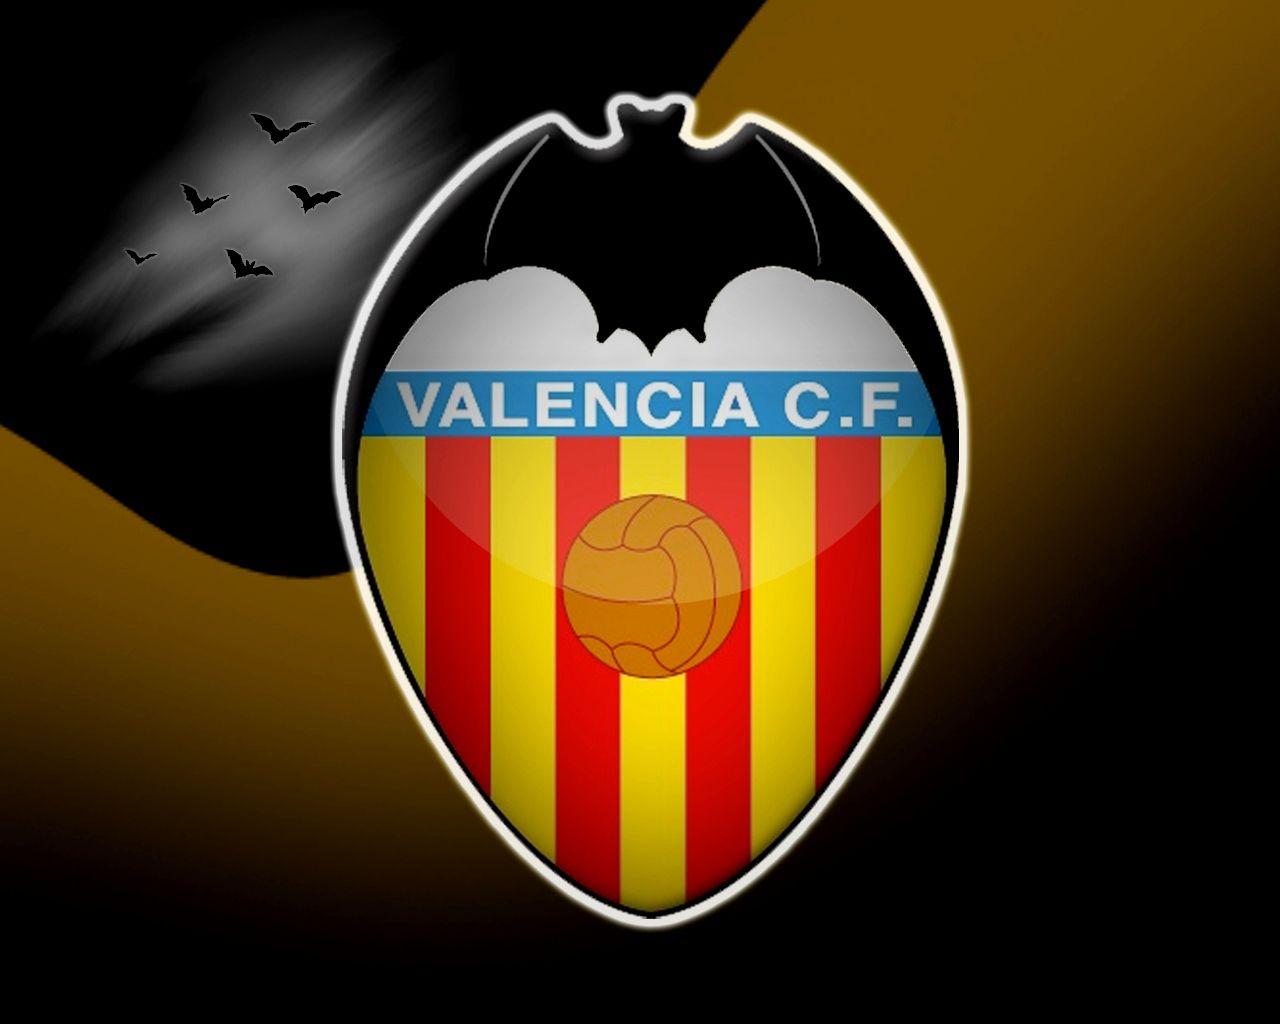 Valencia CF. Football club in World